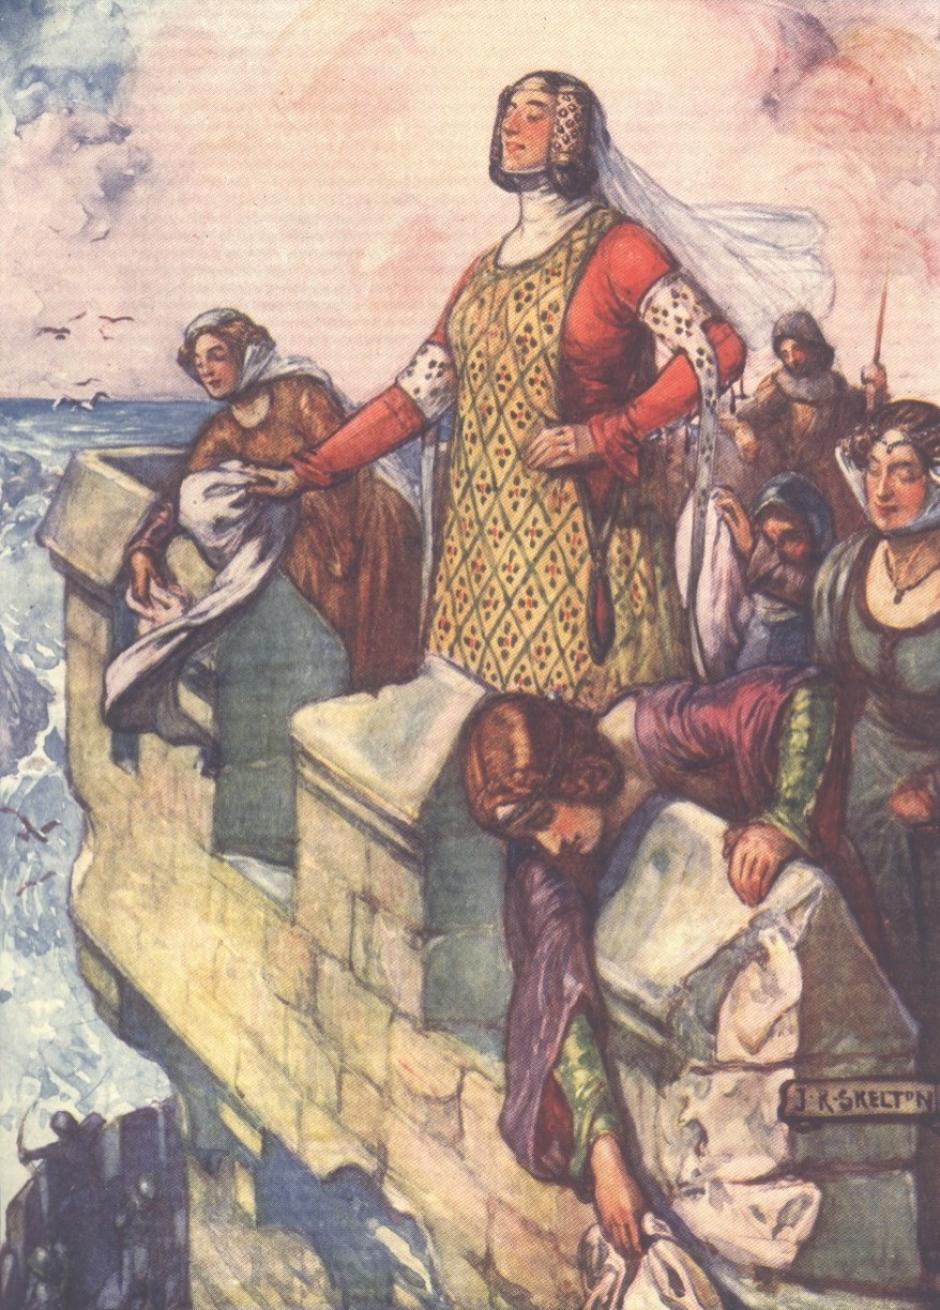 Una representación de "Black Agnes" en "Scotland's Story" de H E Marshall, publicado en 1906.